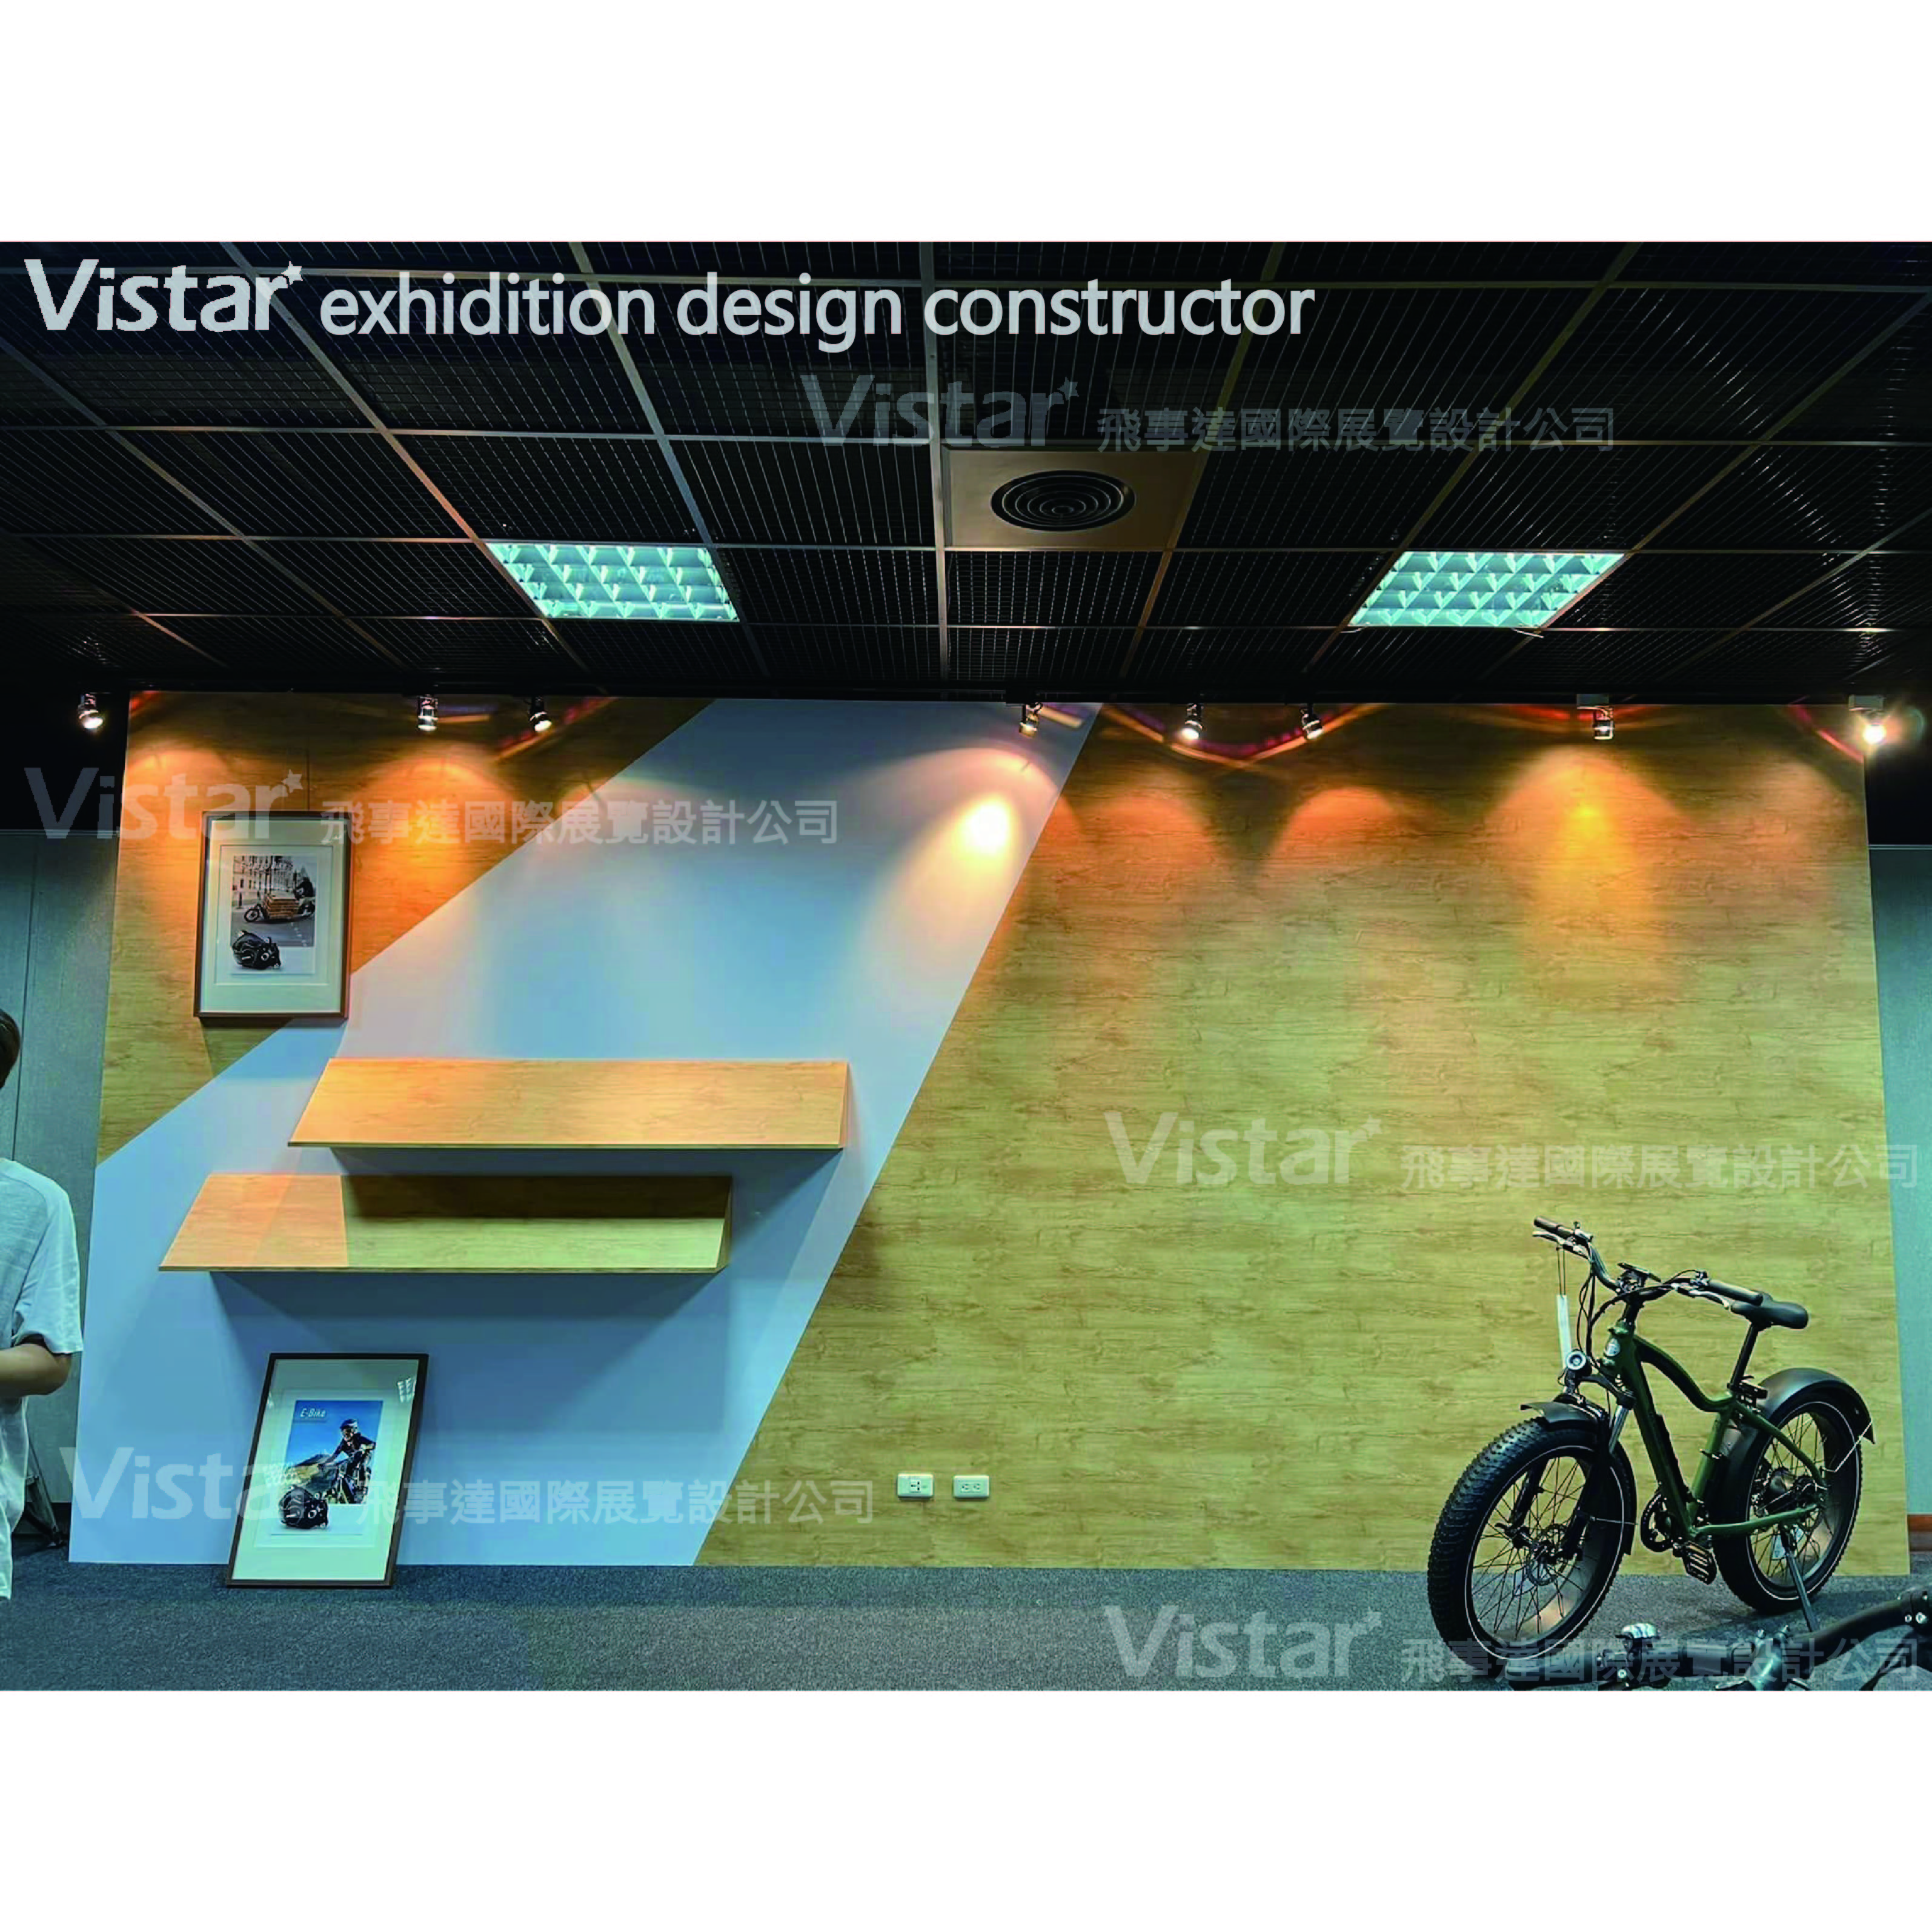 2022 公司產品展示間 Show Room Construction, 飛事達國際展覽設計有限公司, www.vistargp.com